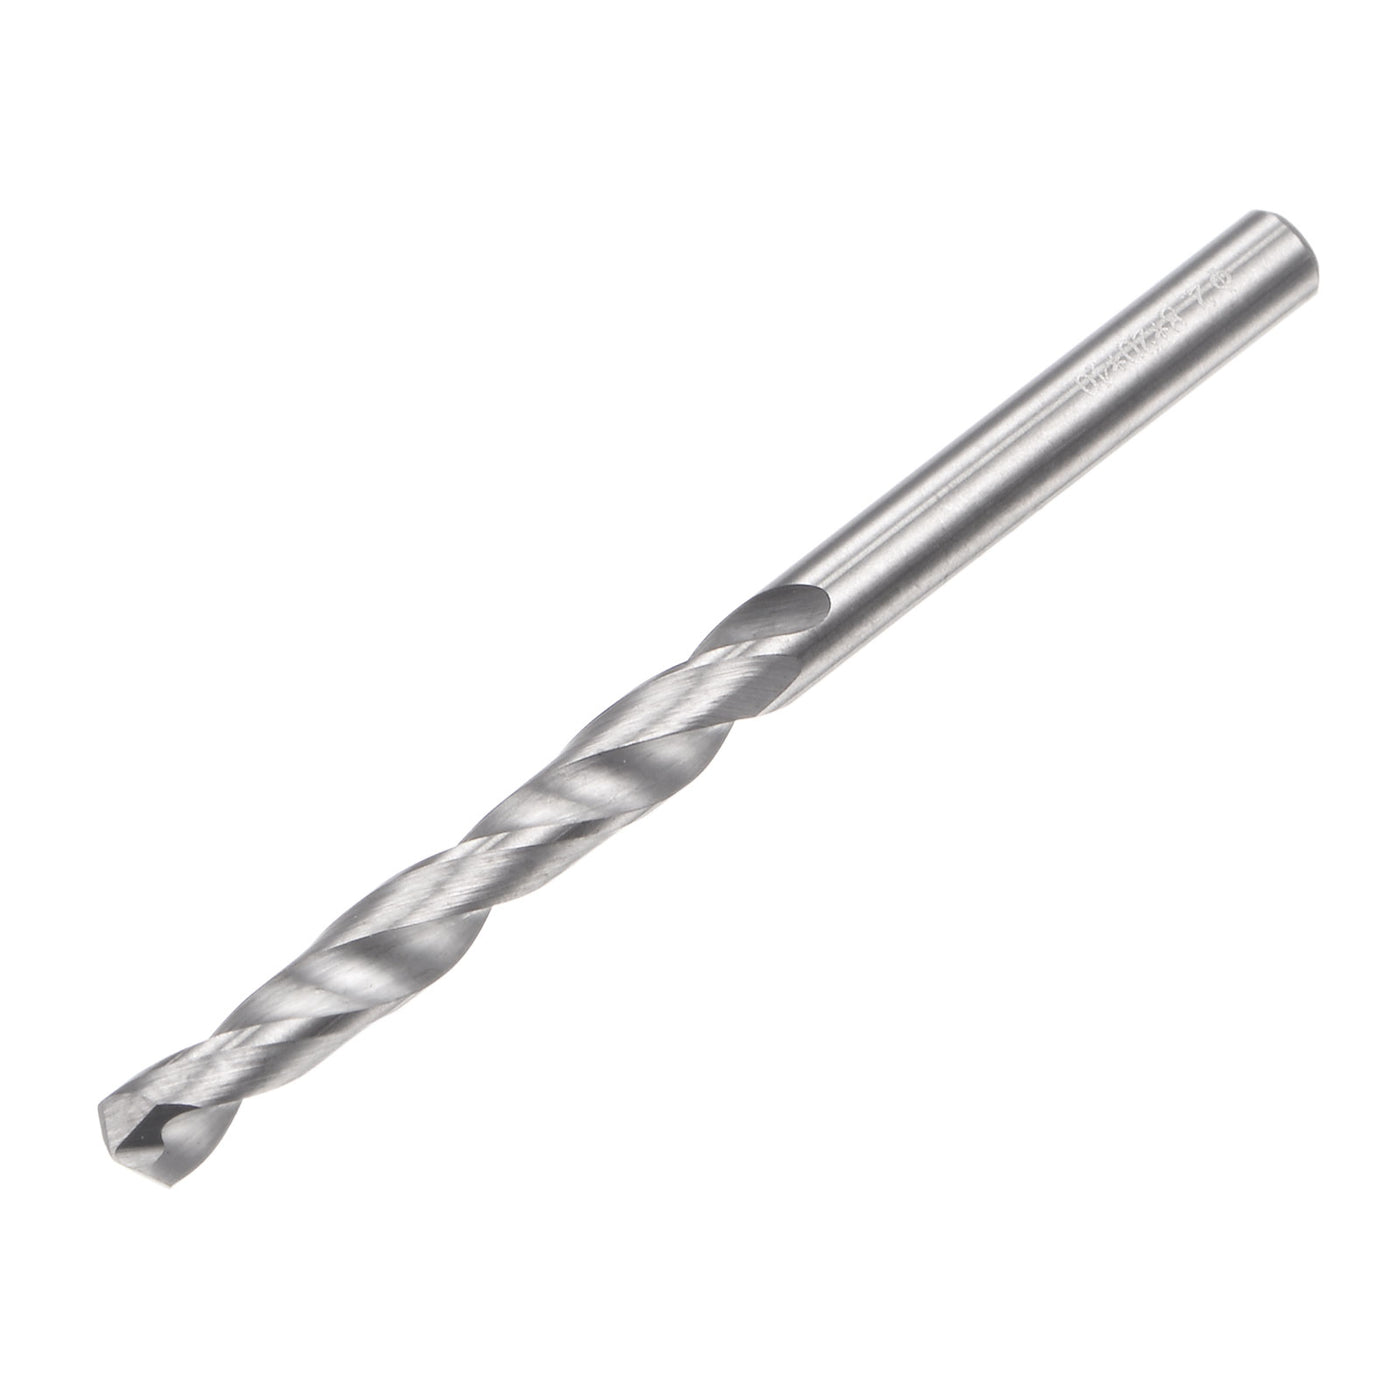 uxcell Uxcell 2.8mm C2/K20 Tungsten Carbide Straight Shank Spiral Flutes Twist Drill Bit